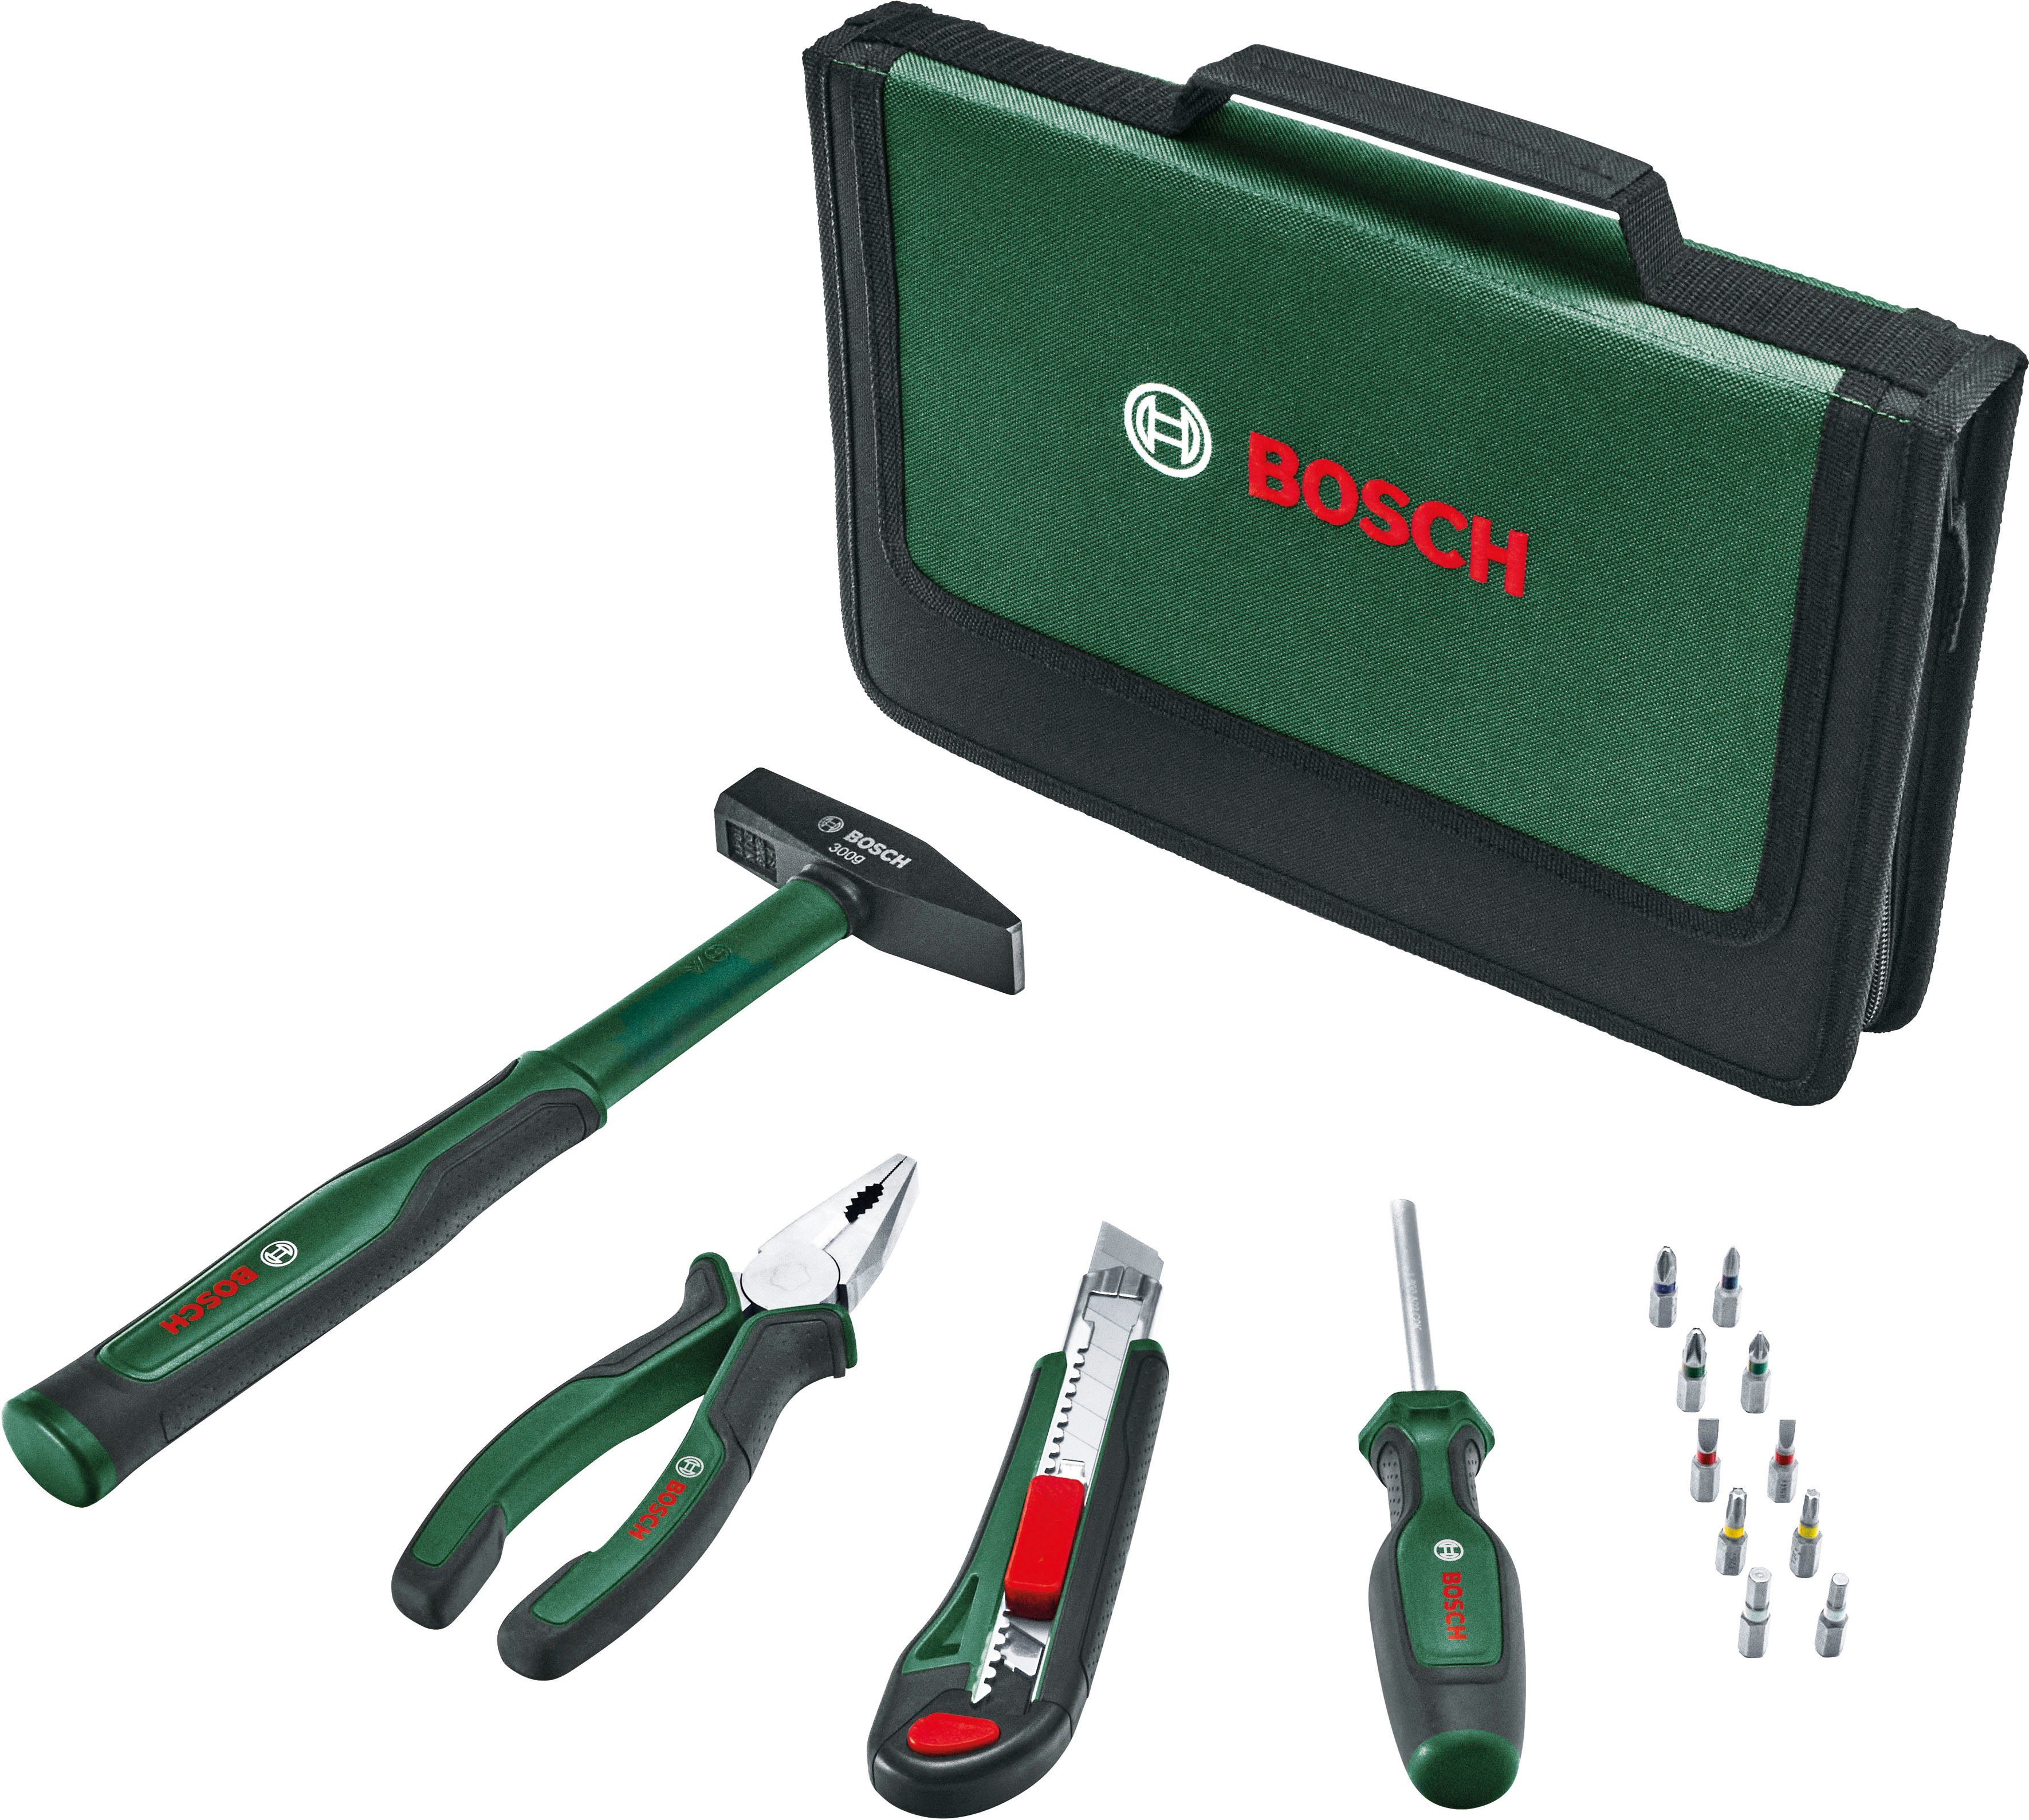 & Easy Garden Home 14-teilig Bosch Werkzeugset Werkzeug Starter Set,